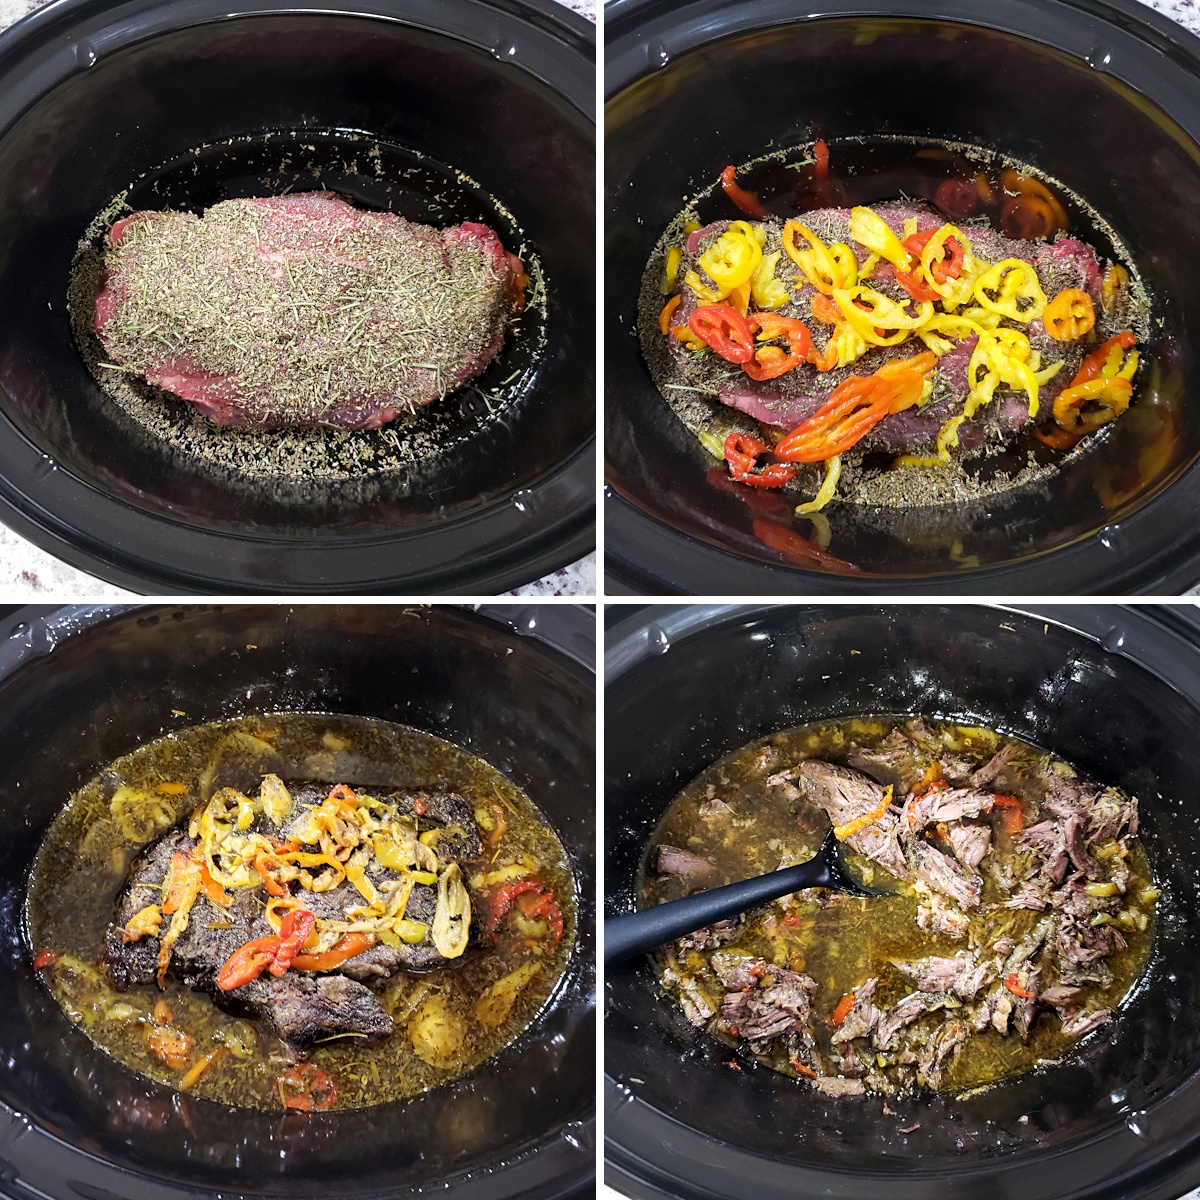 Beef roast in a crock pot. 